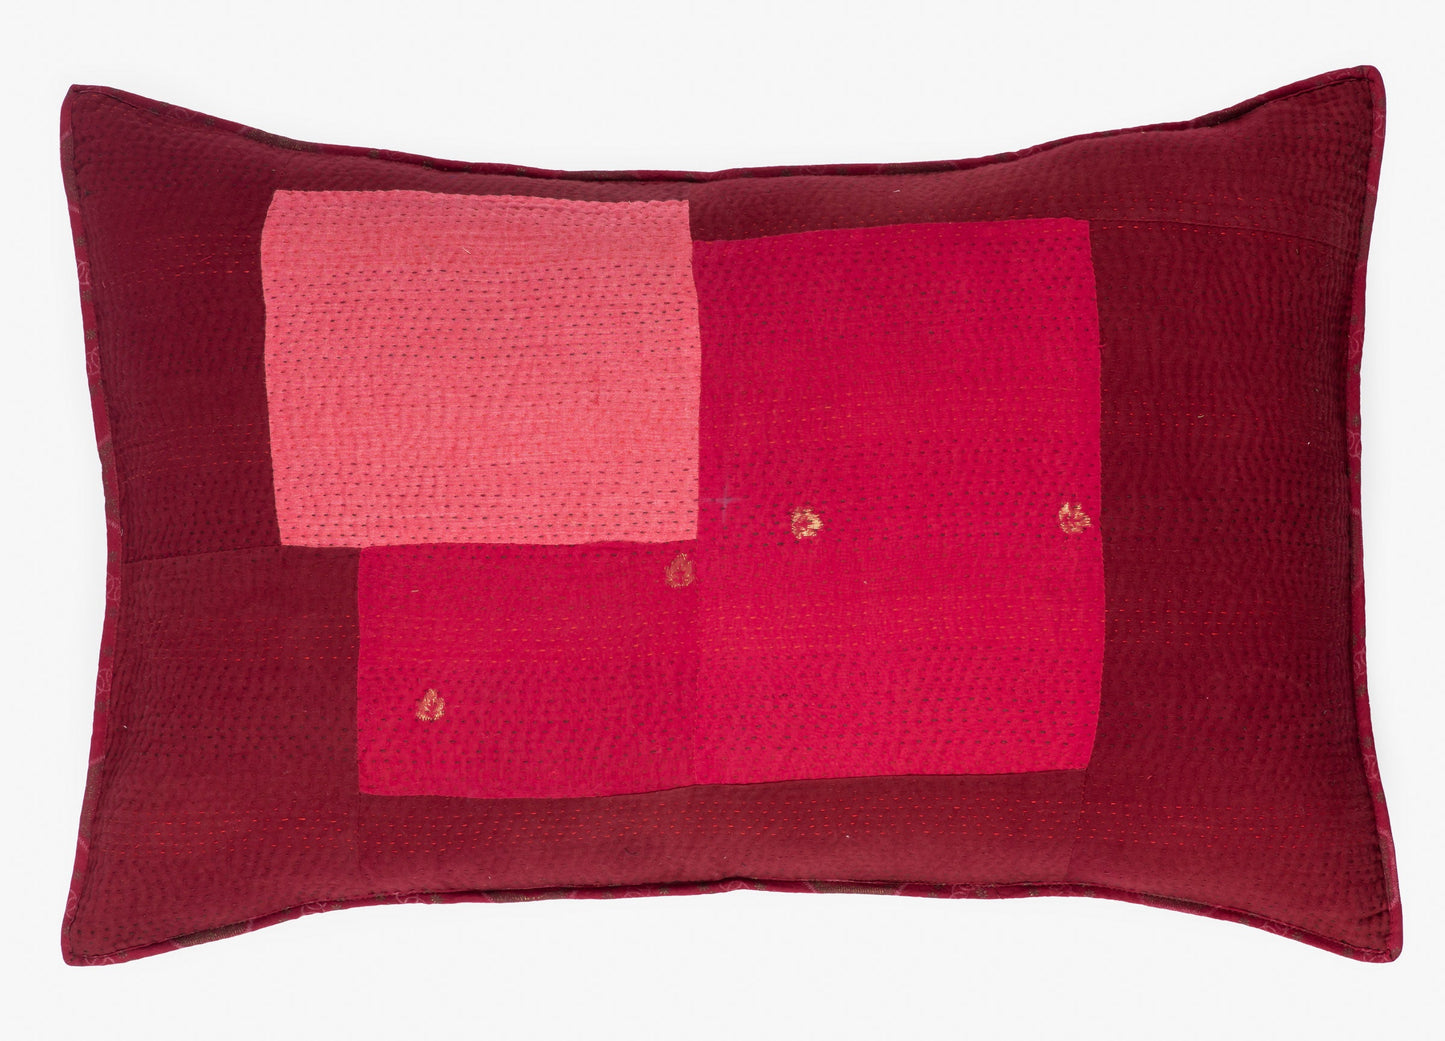 Landscape Handmade vintage Kantha Pillow - Red